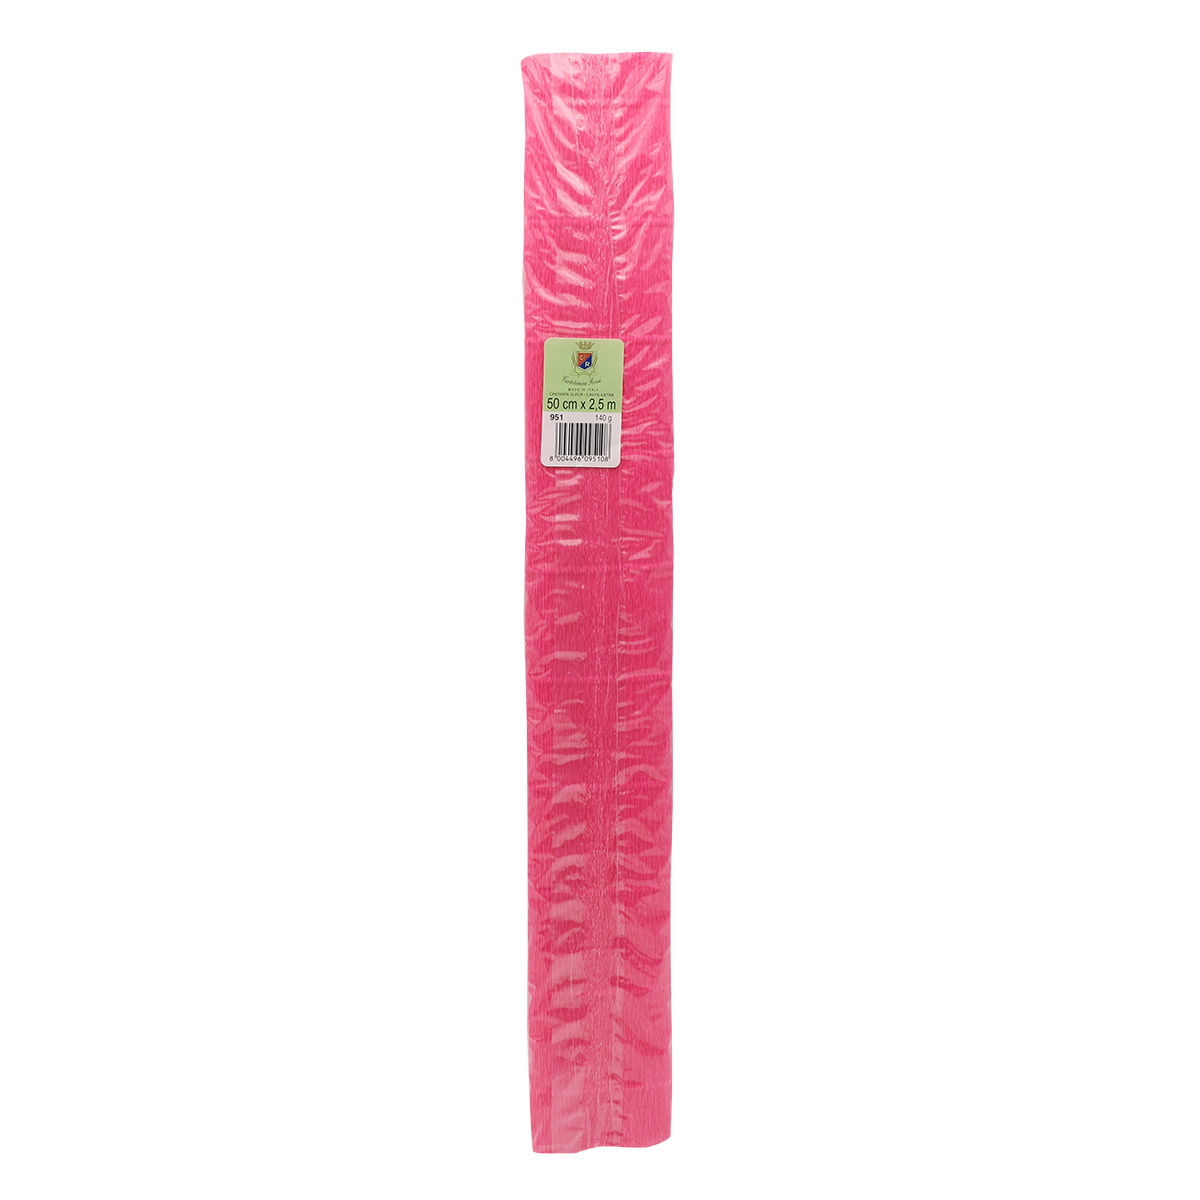 Бумага Айрис гофрированная креповая для творчества 50 см х 2.5 м 140 гр ярко-розовая - фото 4